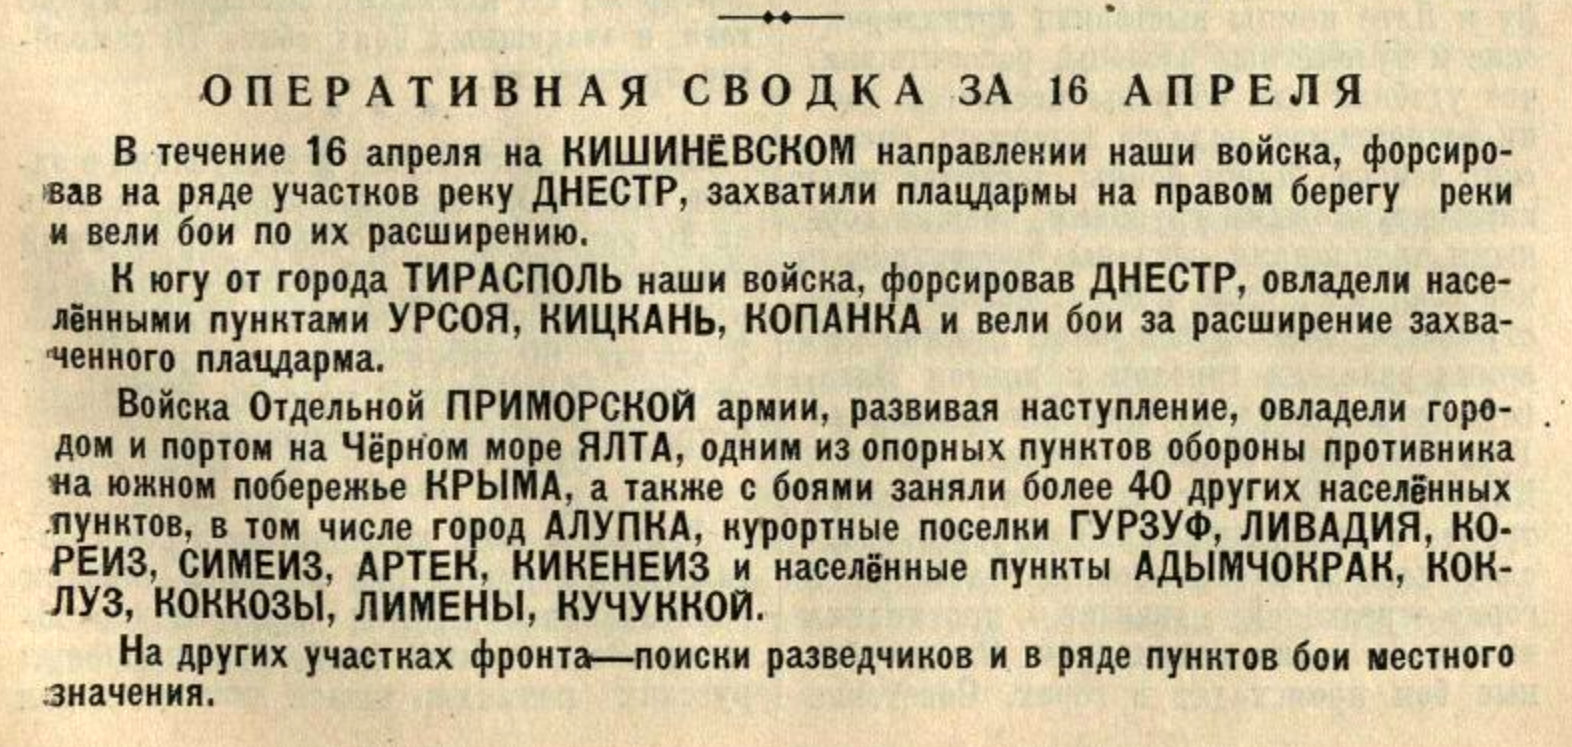 Сводка Советского информбюро за 16 апреля 1944 г.